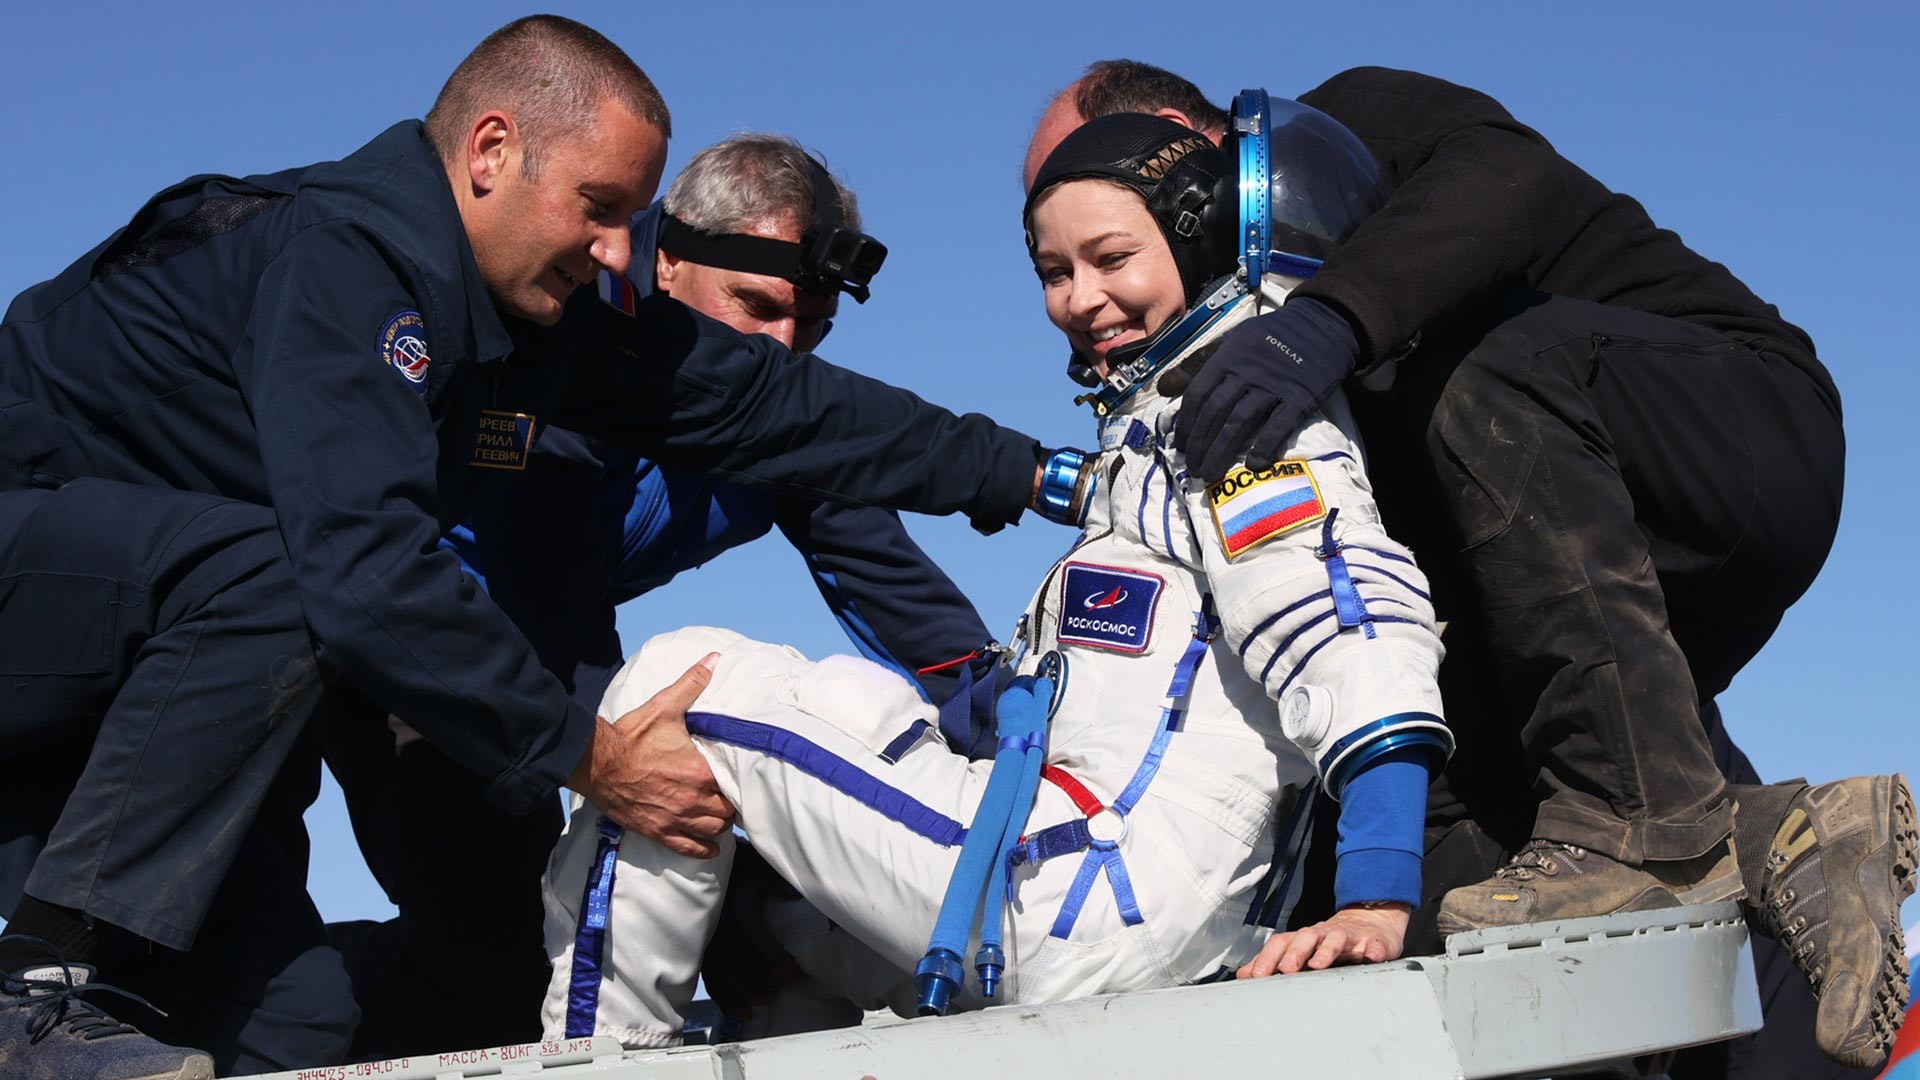 Kazakhstan. L'attrice Julia Peresild esce dalla navicella Soyuz MS-18 che l'ha riportata sulla Terra dopo aver trascorso 12 giorni nello spazio per le riprese del primo film girato in orbita, "The Challenge" (titolo originale: "Vyzov", la sfida)